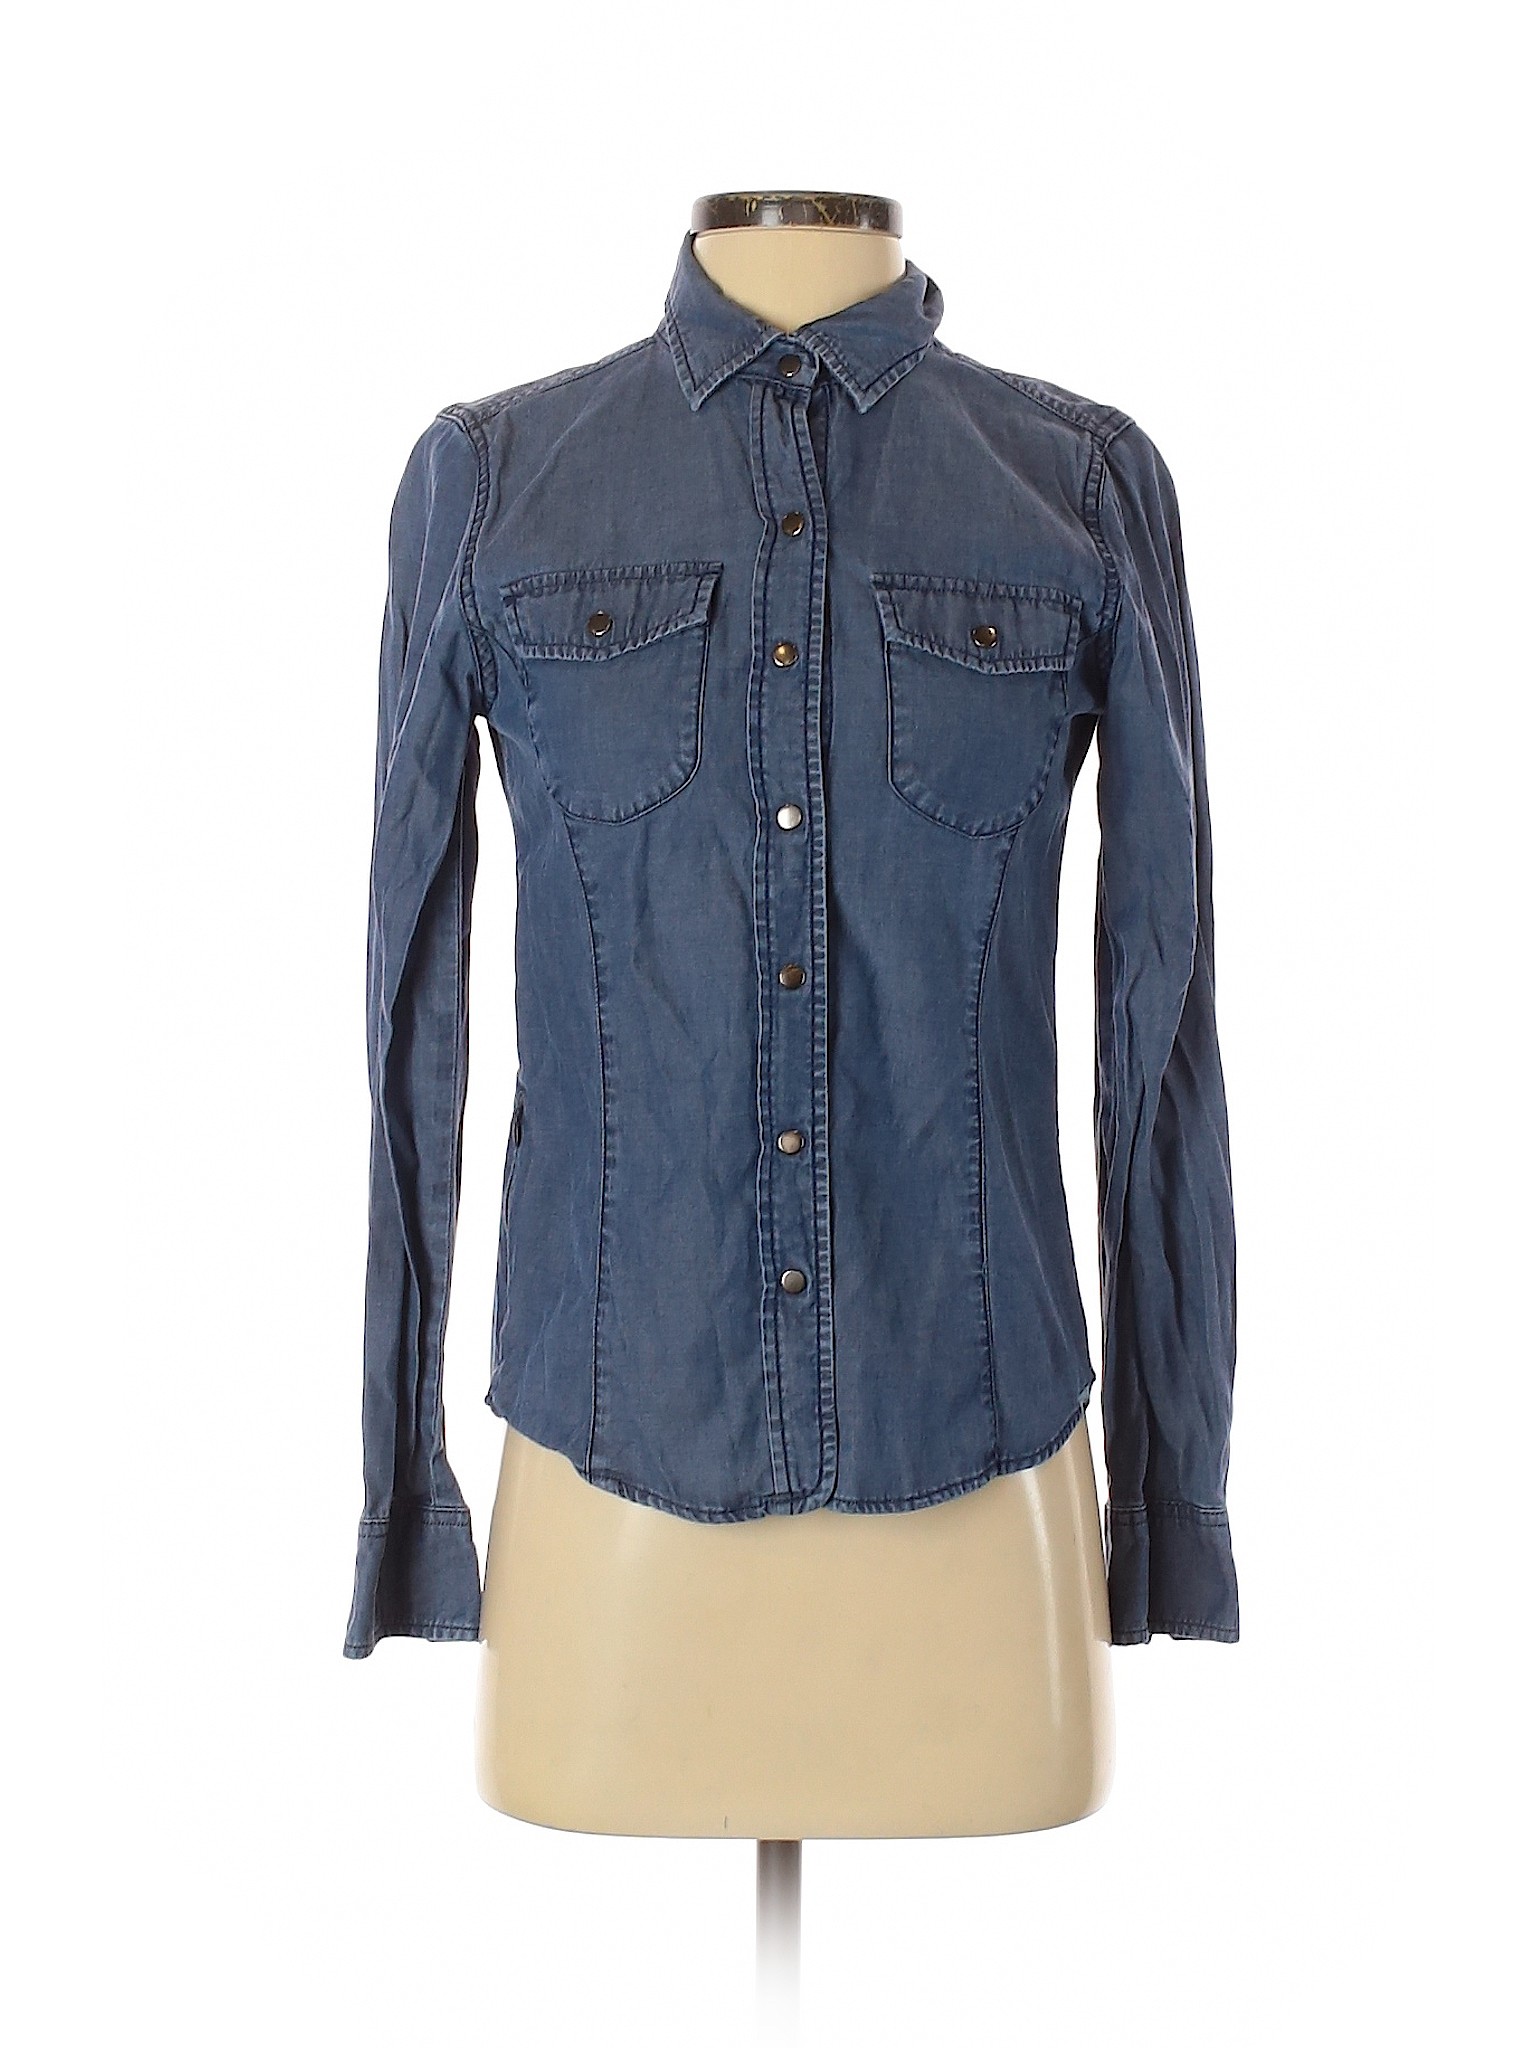 REI Solid Blue Long Sleeve Button-Down Shirt Size XXS - 82% off | thredUP